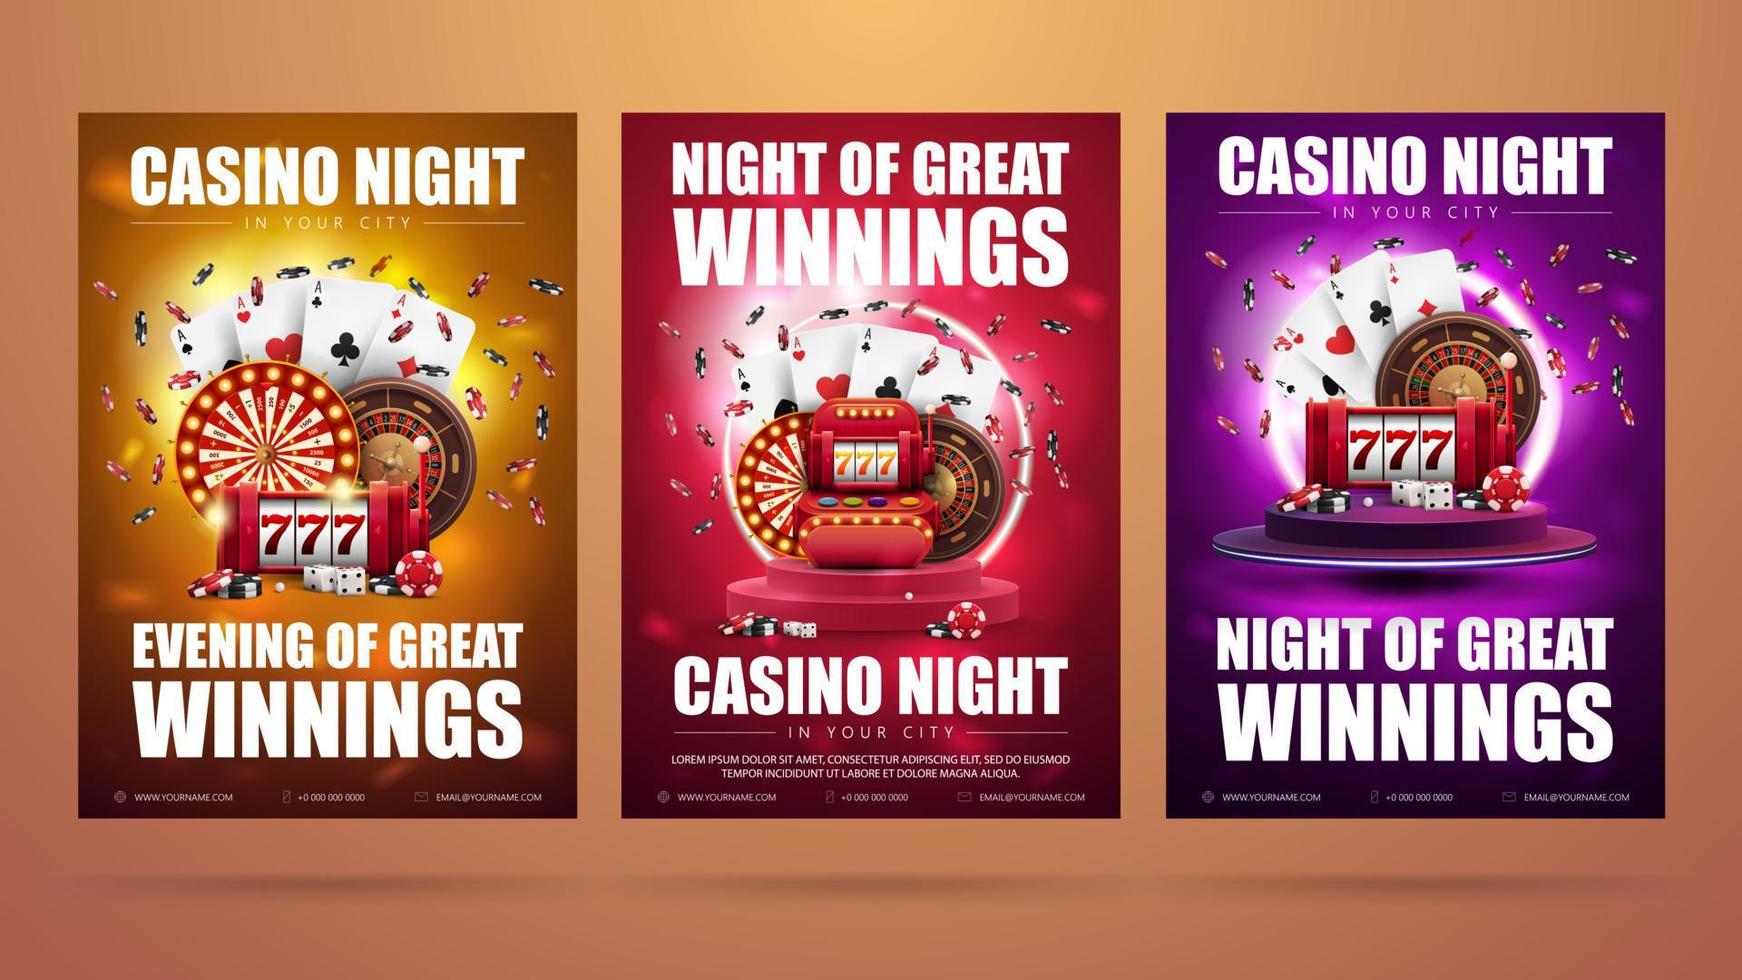 Casino-Nacht, Satz Einladungsplakate mit Casino-Elementen. Plakate mit Spielautomaten, Casino-Roulette-Rad, Spielkarten und Pokerchips vektor